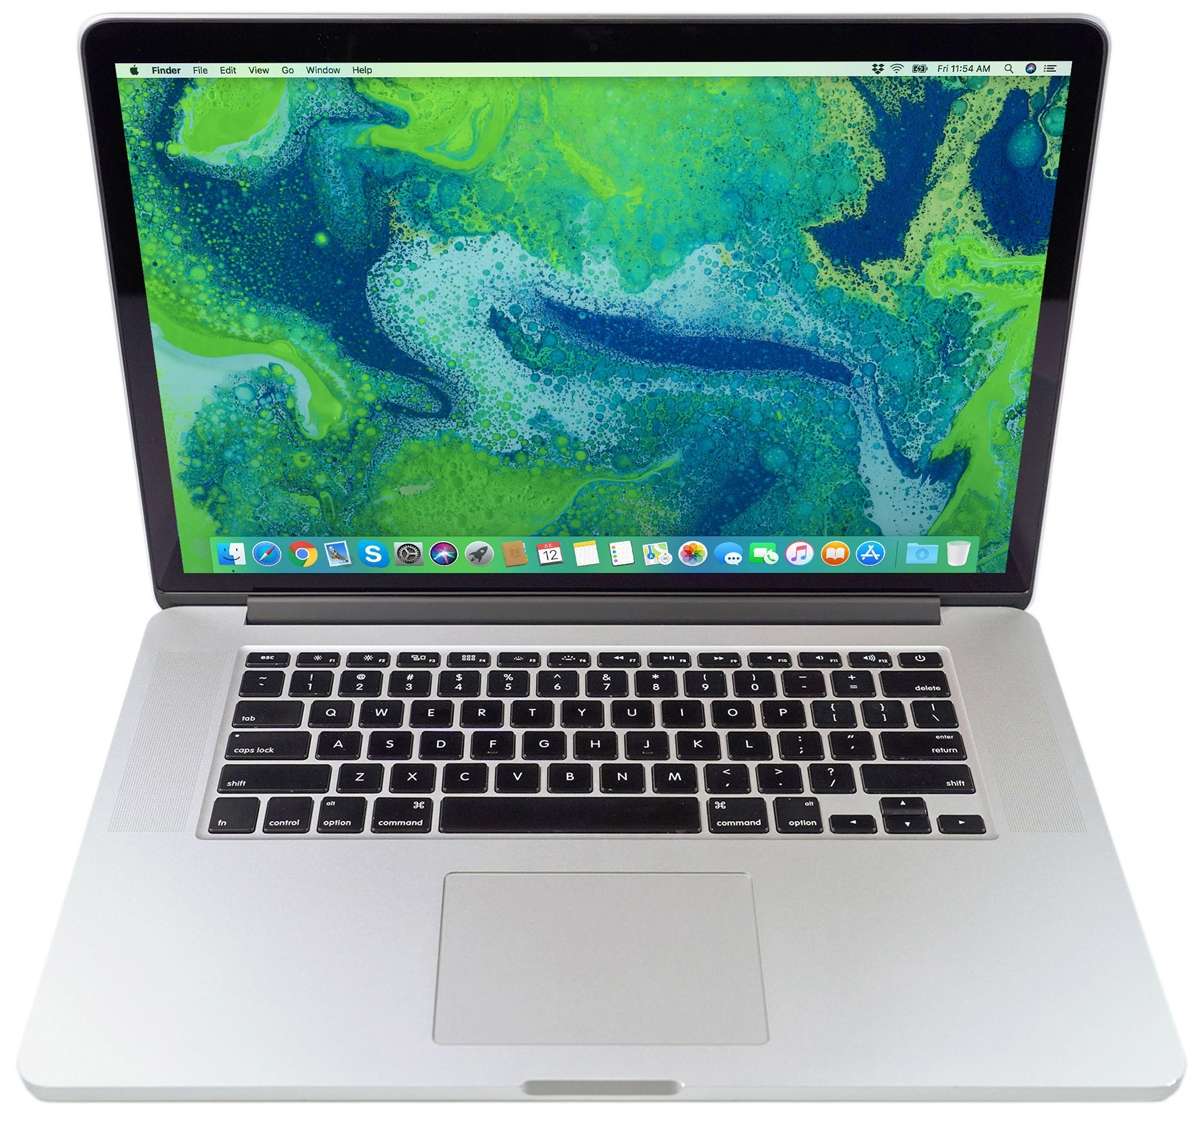 MacBook 12 2015 m - 1,3 Ghz 8 Go RAM 512Go SSD